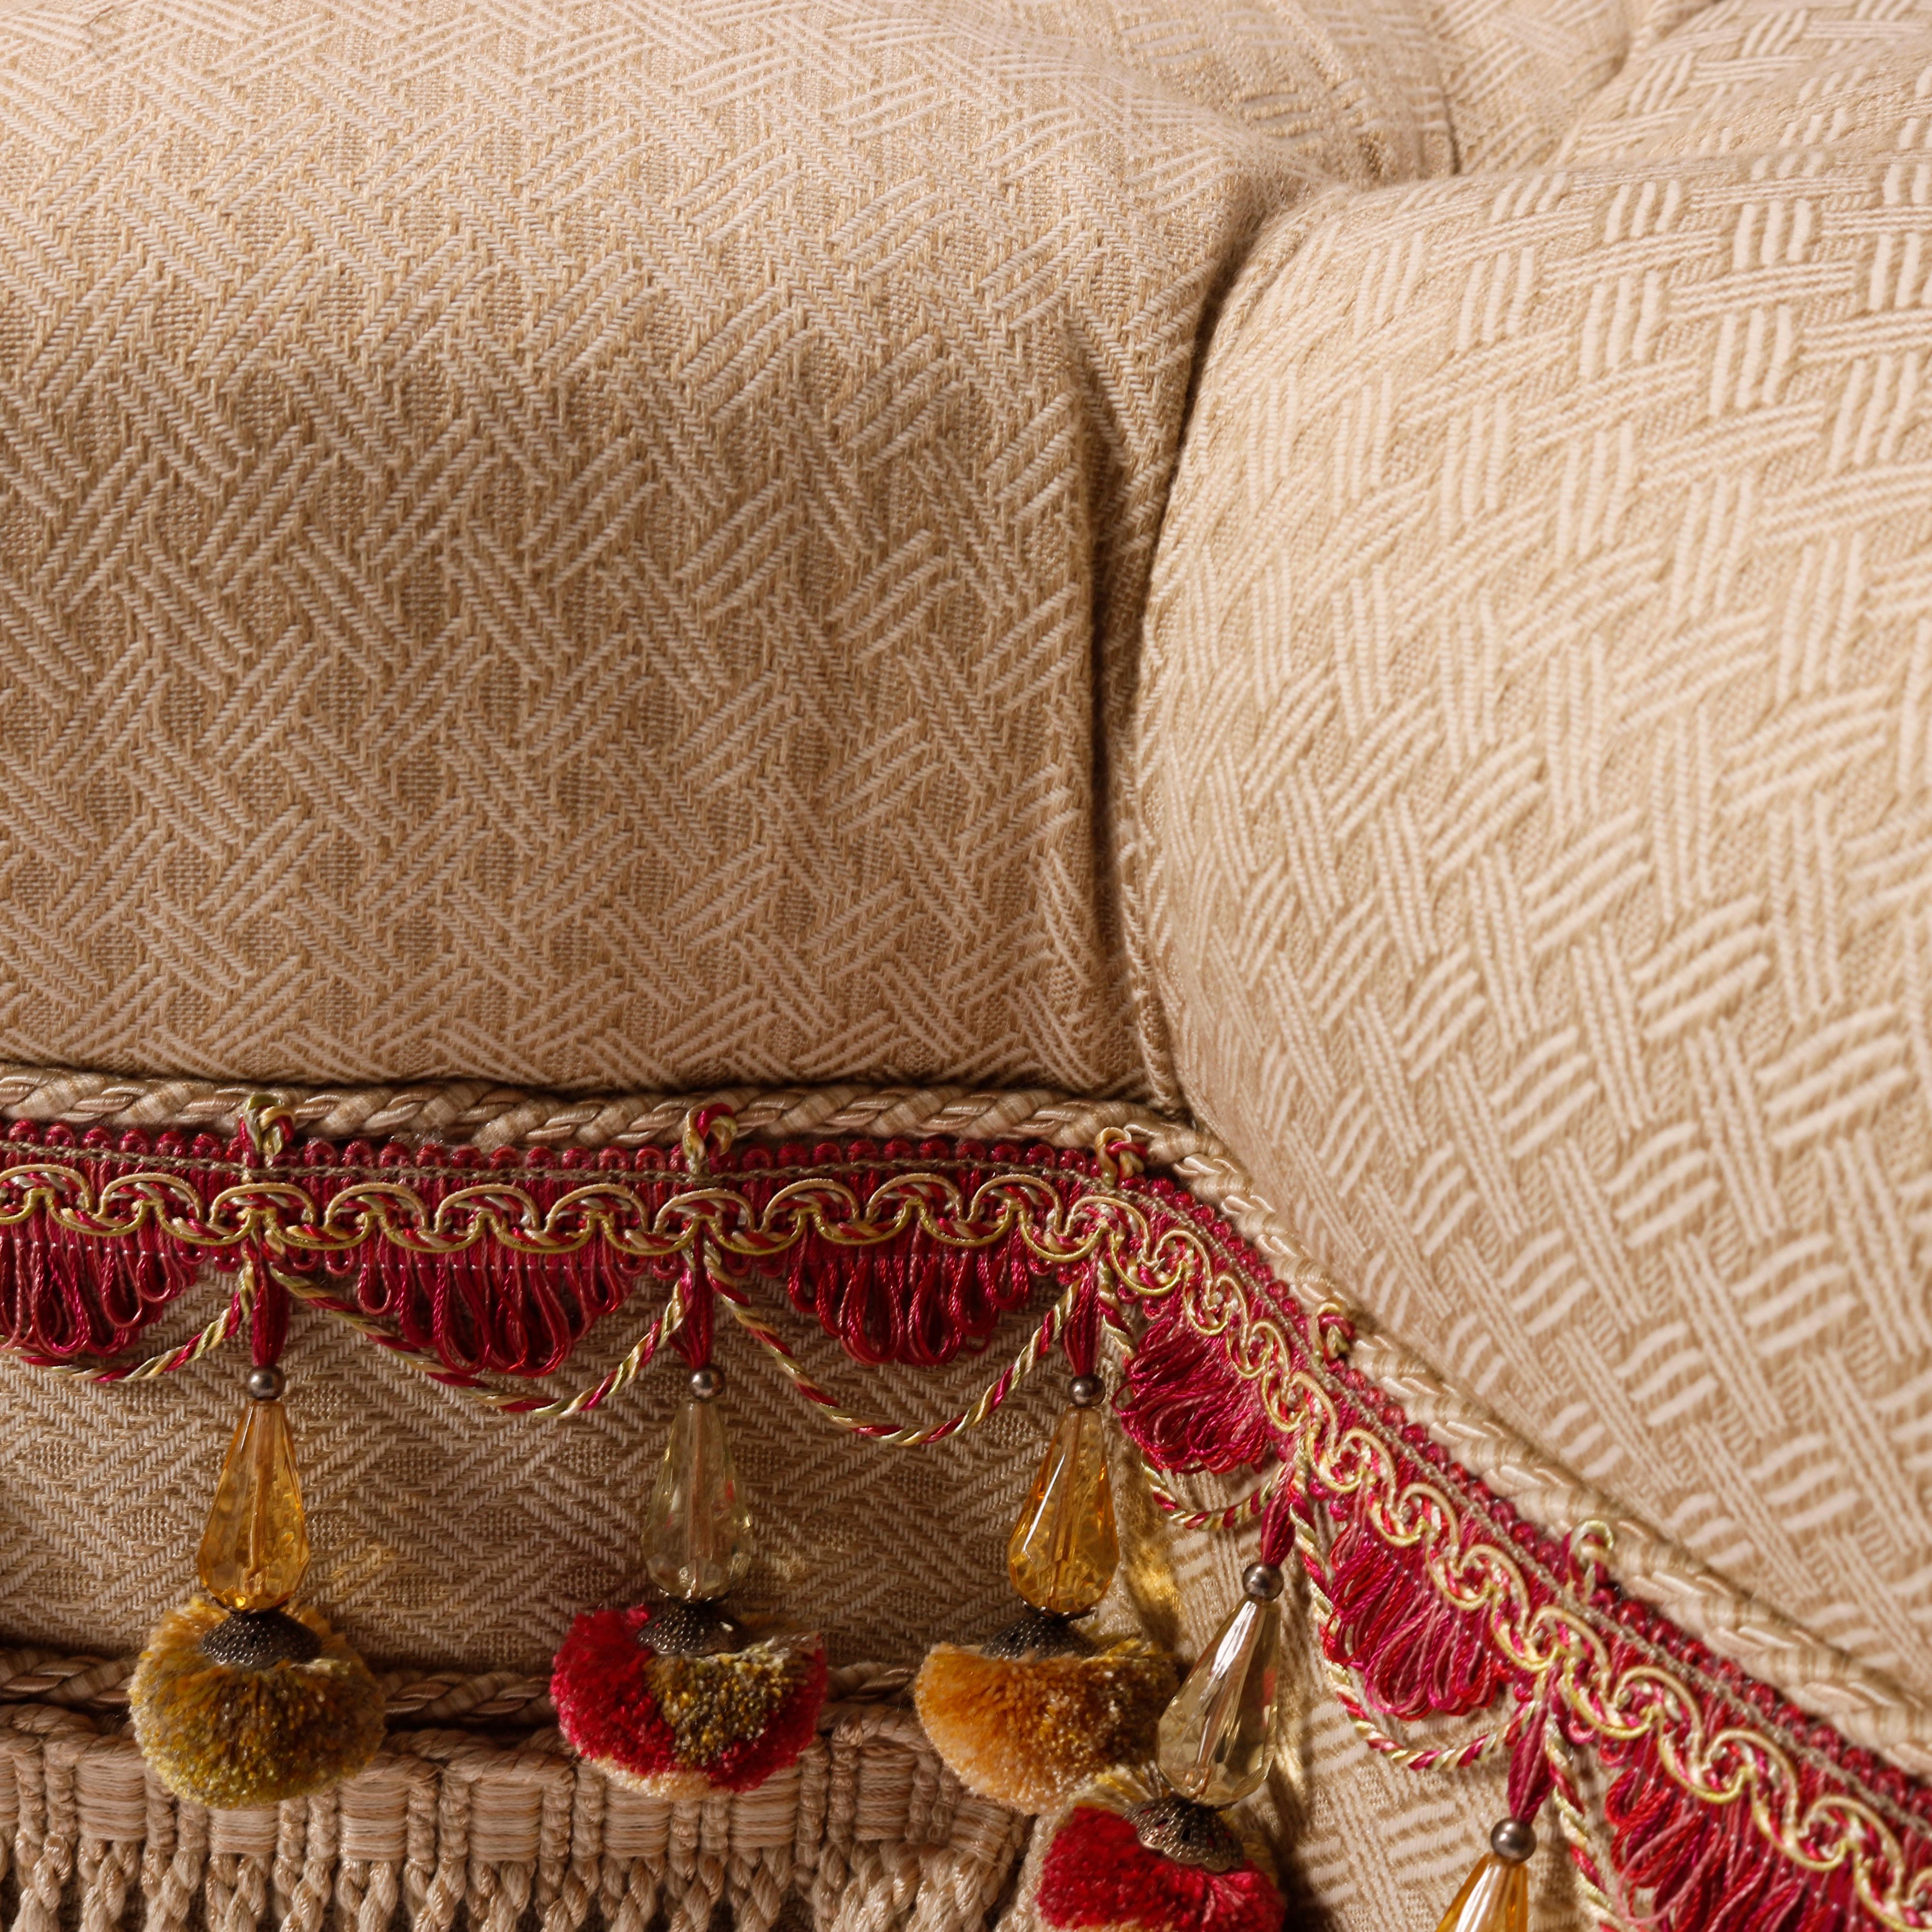 Upholstery Oversized Ethan Allen Tufted Cloverleaf Upholstered & Skirted Ottoman 20th C